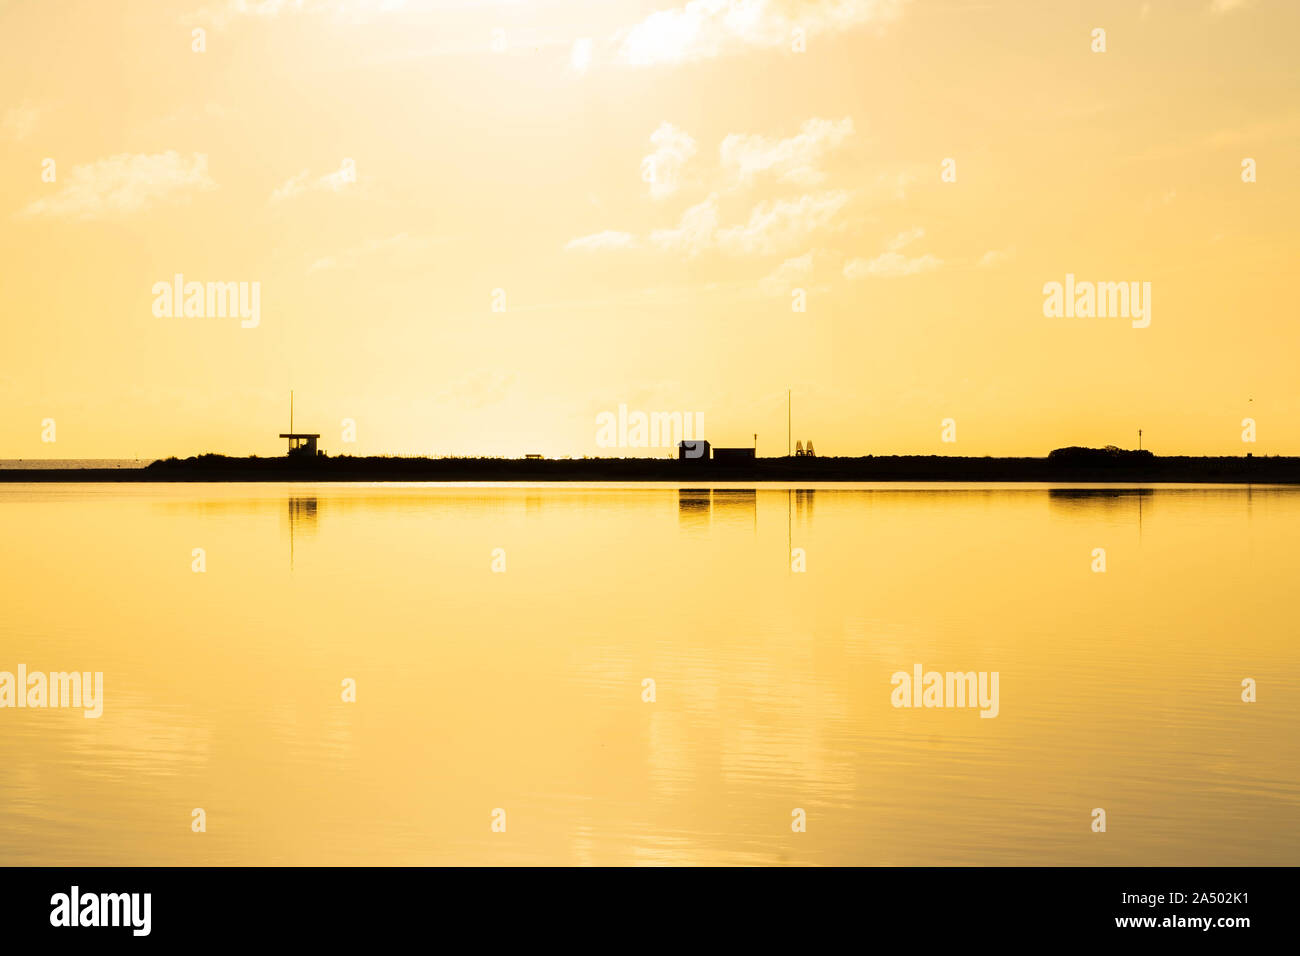 Heure d'or sur l'océan : la plage avec un baywatch tower couvert de lumière dorée, l'océan reflétant la lumière du soleil Banque D'Images